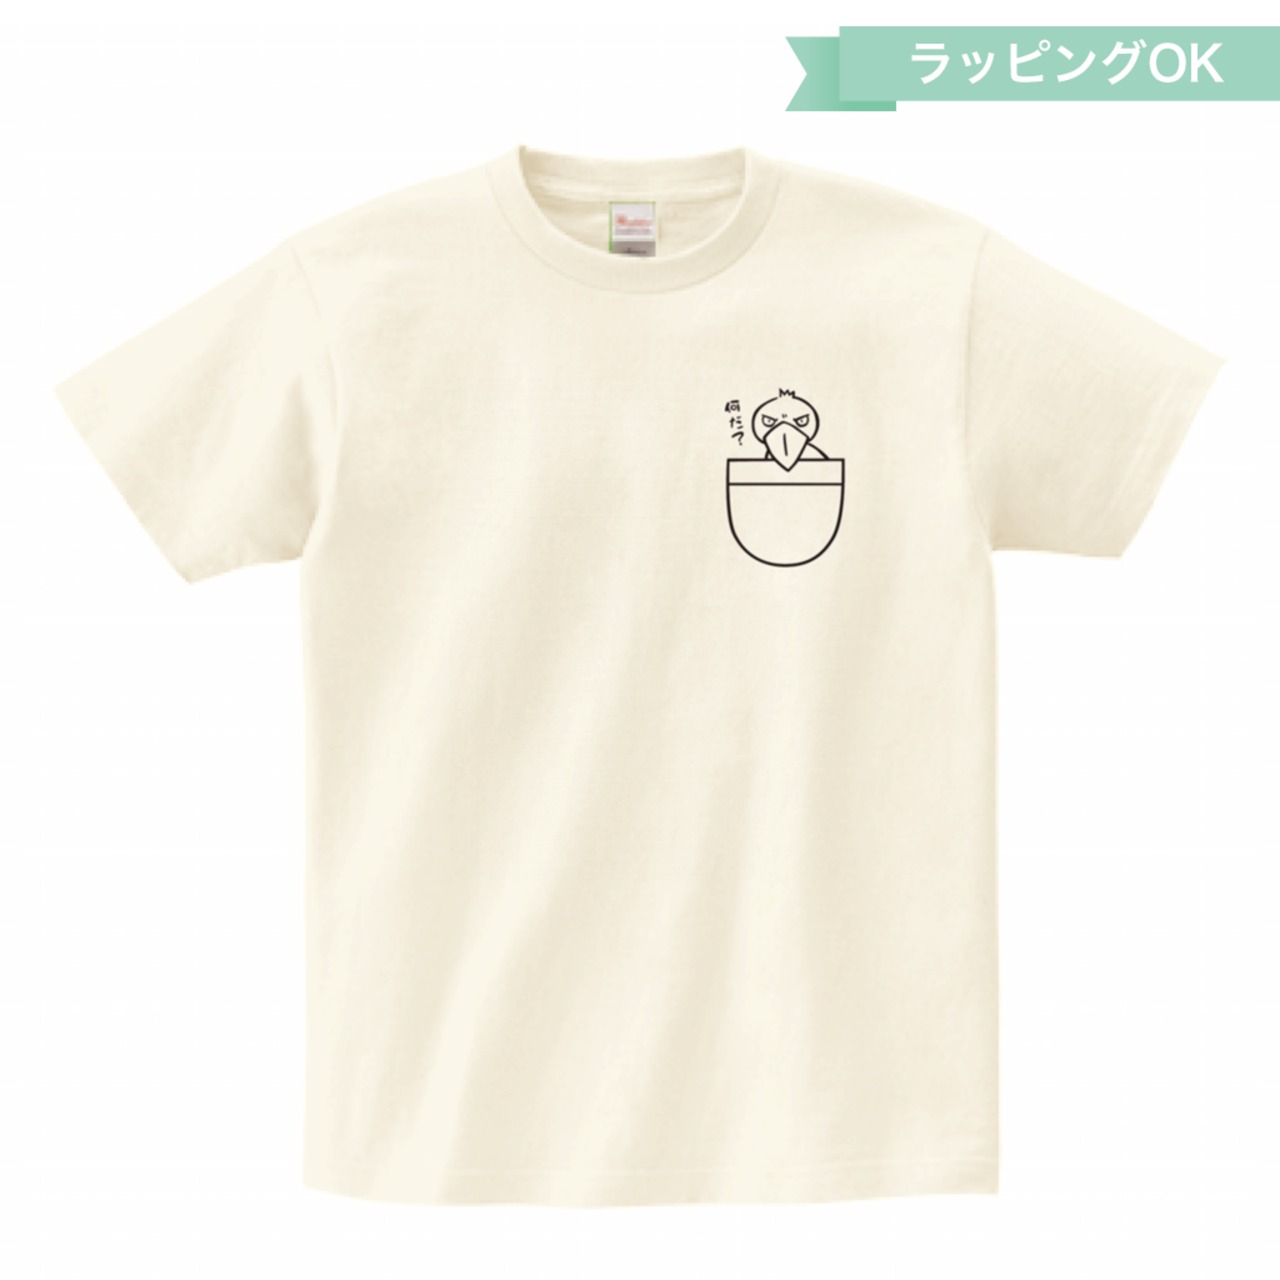 Tシャツ「ポケット」★ハシビロコウ【アイボリー】